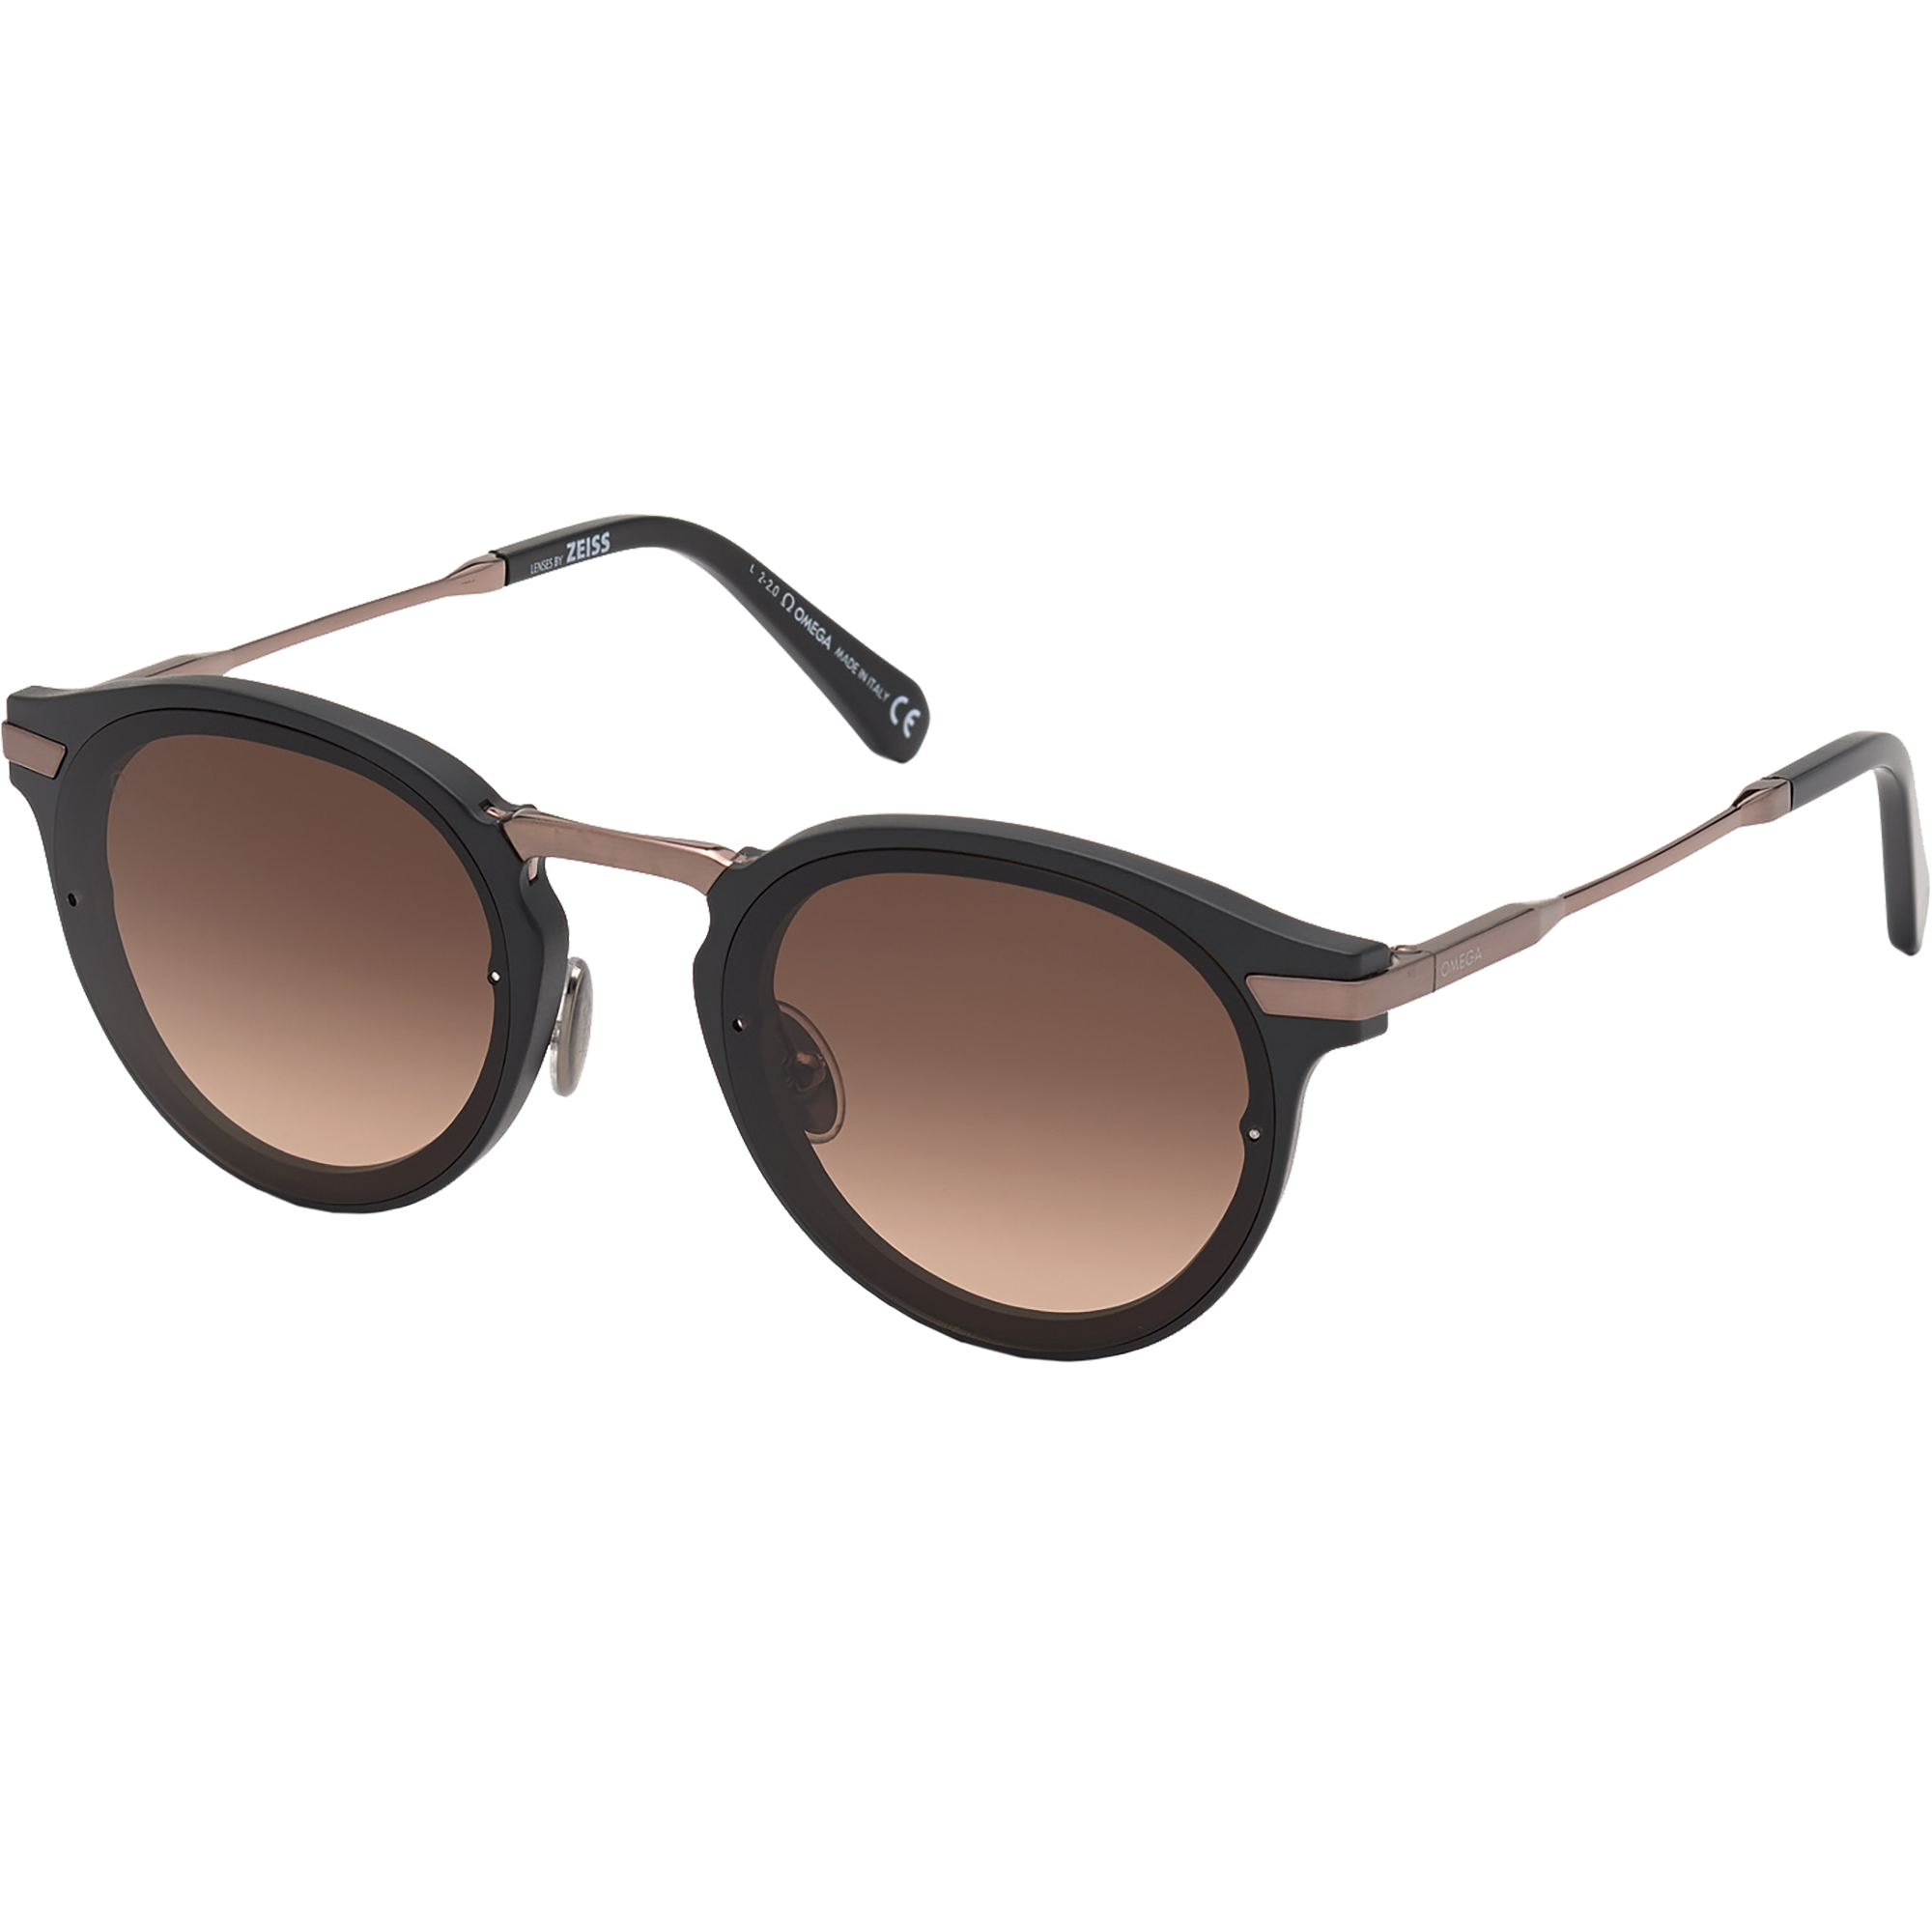 Солнцезащитные очки - Круглая форма, МУЖСКИЕ ОЧКИ - OM0029-H5402F